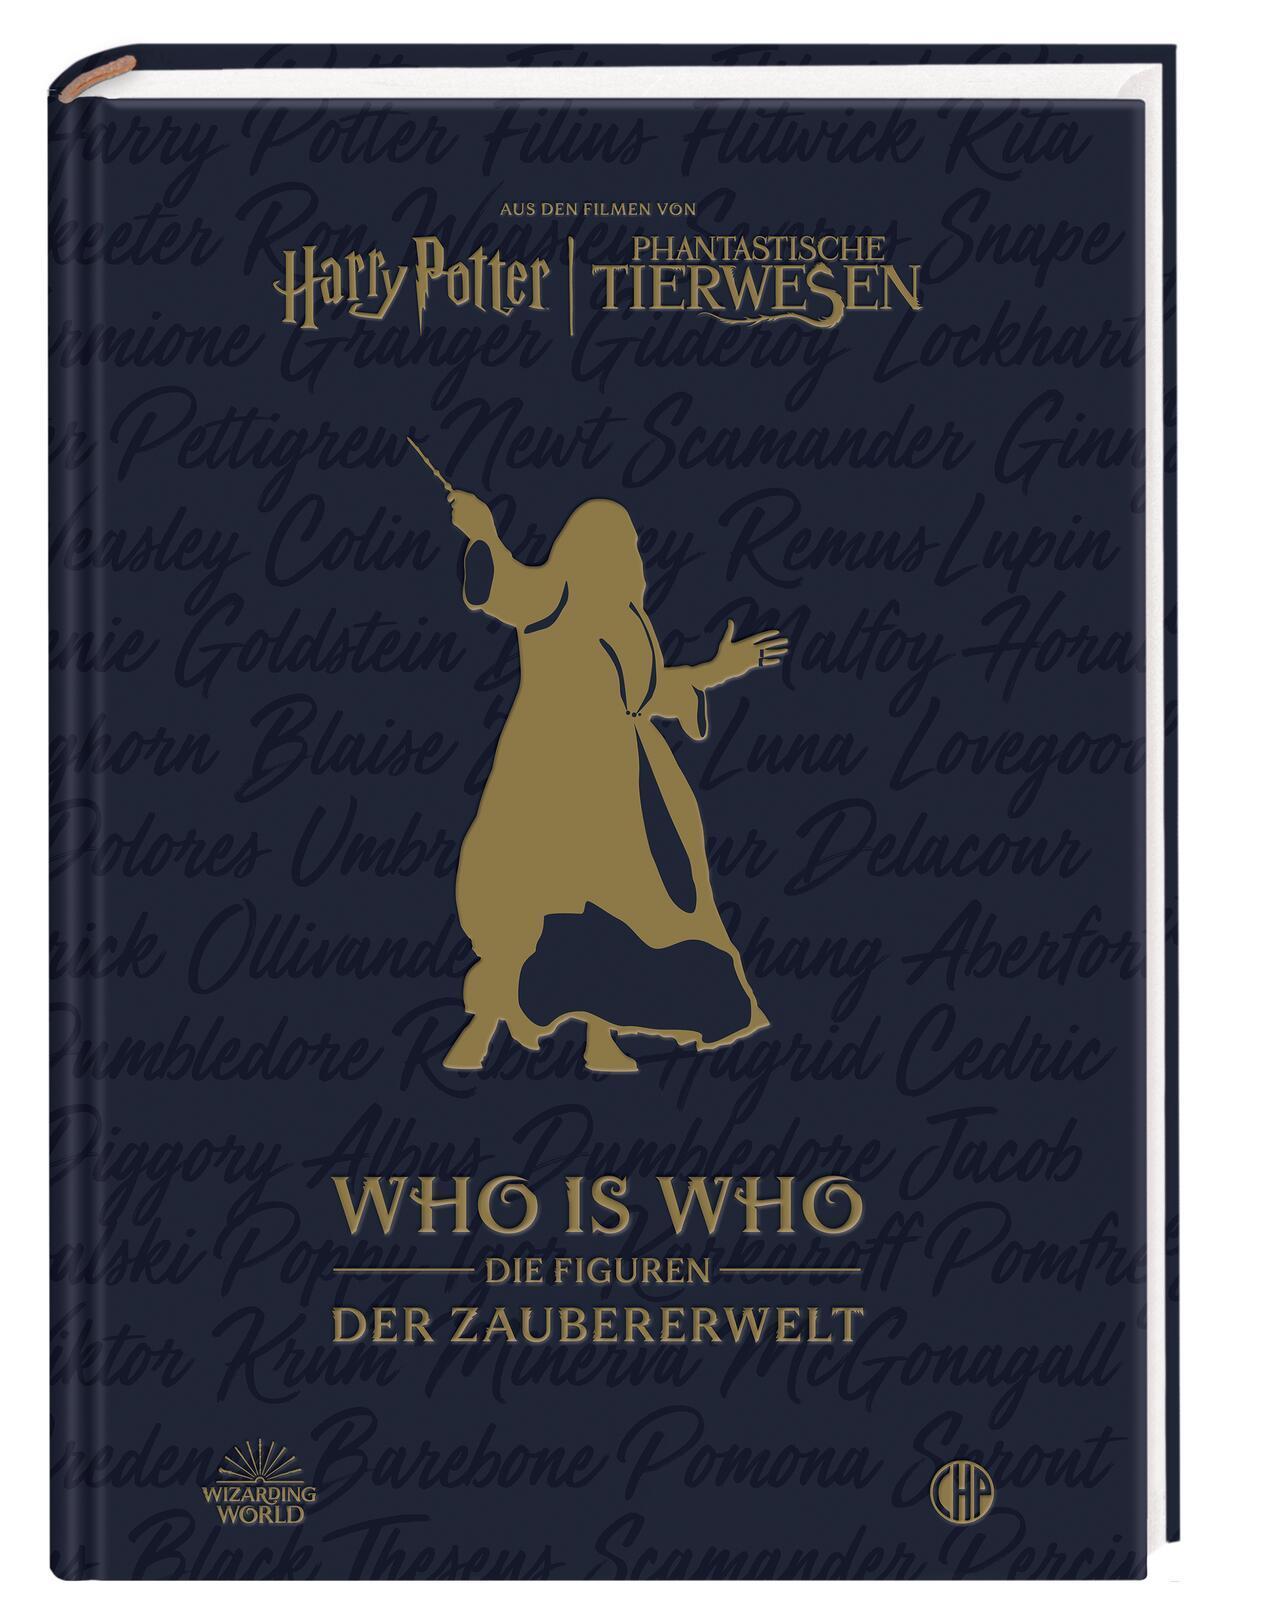 Aus den Filmen von Harry Potter und Phantastische Tierwesen: WHO IS WHO - Die Figuren der Zaubererwelt: Ein Almanach für Fans des magischen Hogwarts-Universums